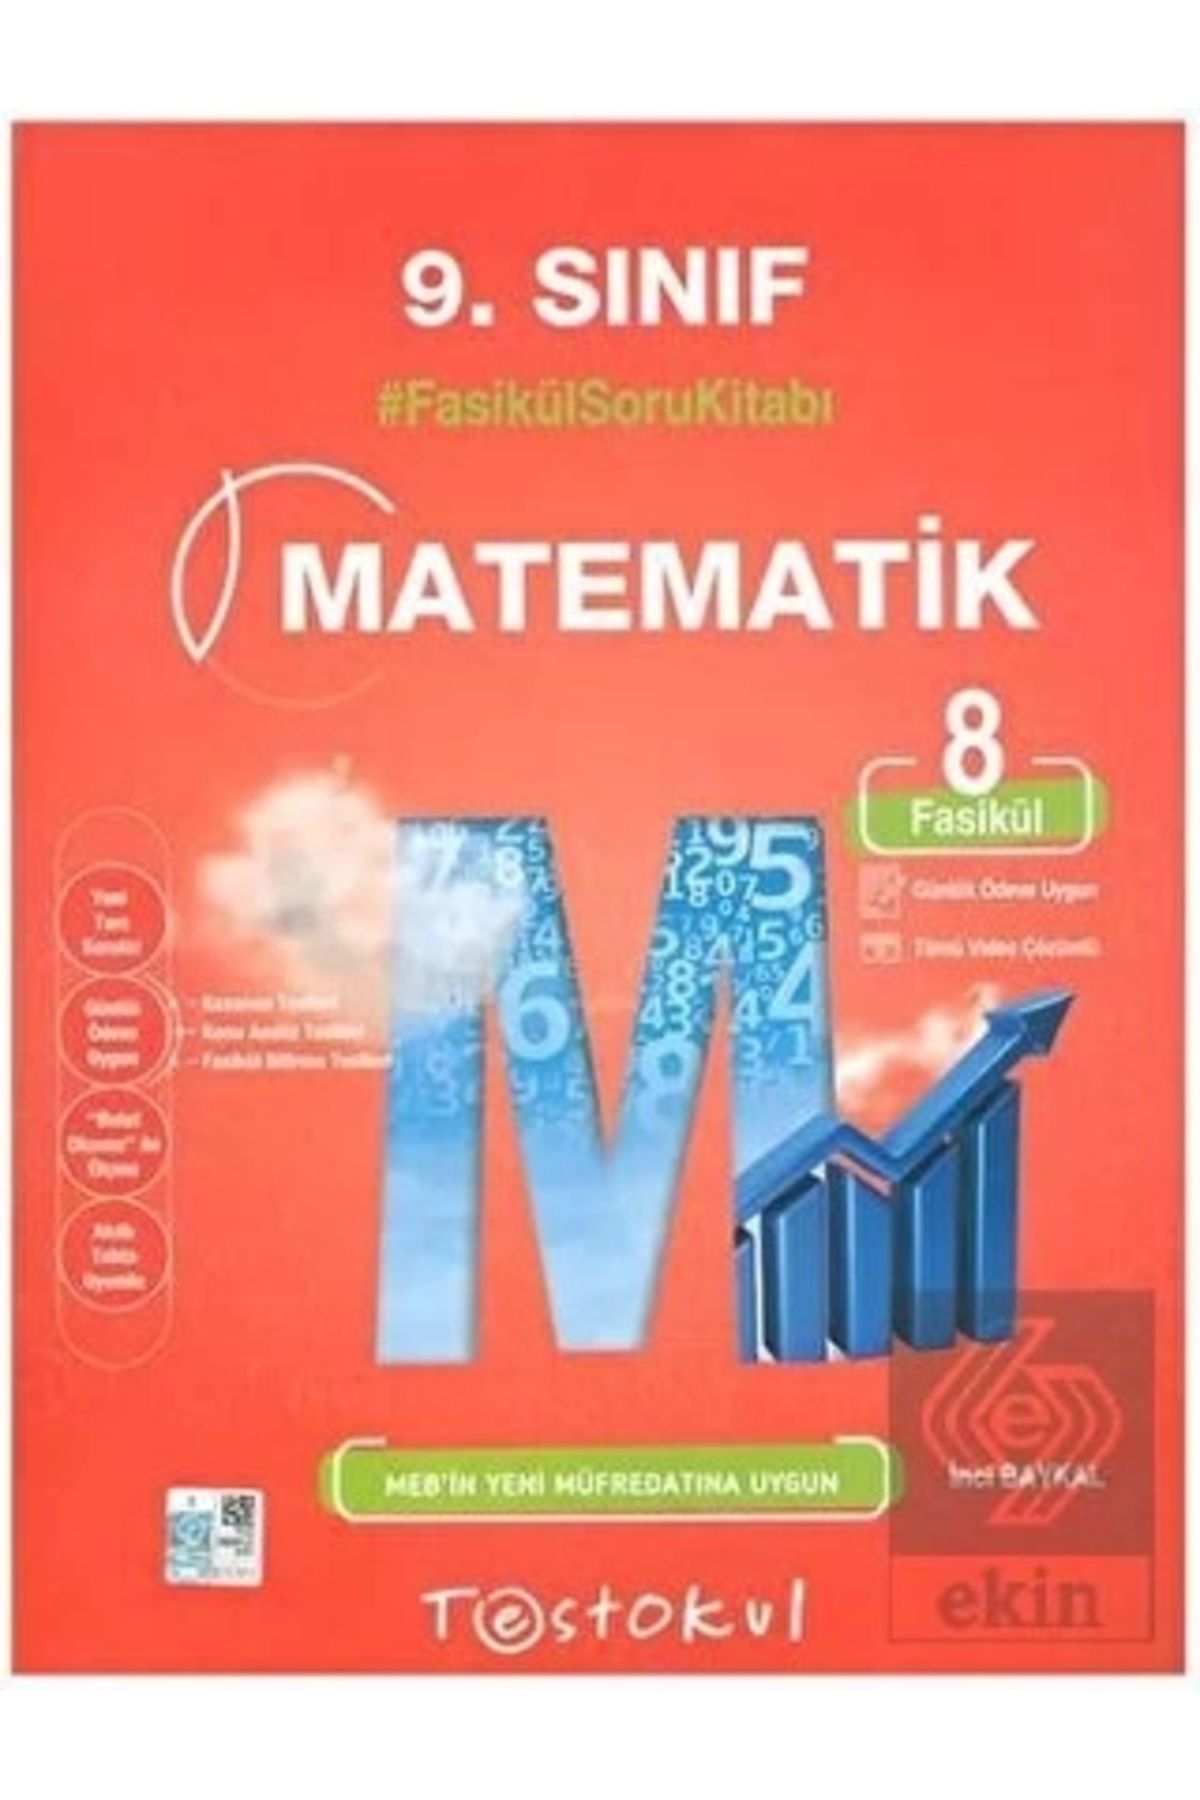 Test Okul Yayınları 9.sınıf Matematik Fasikül Soru Kitabı